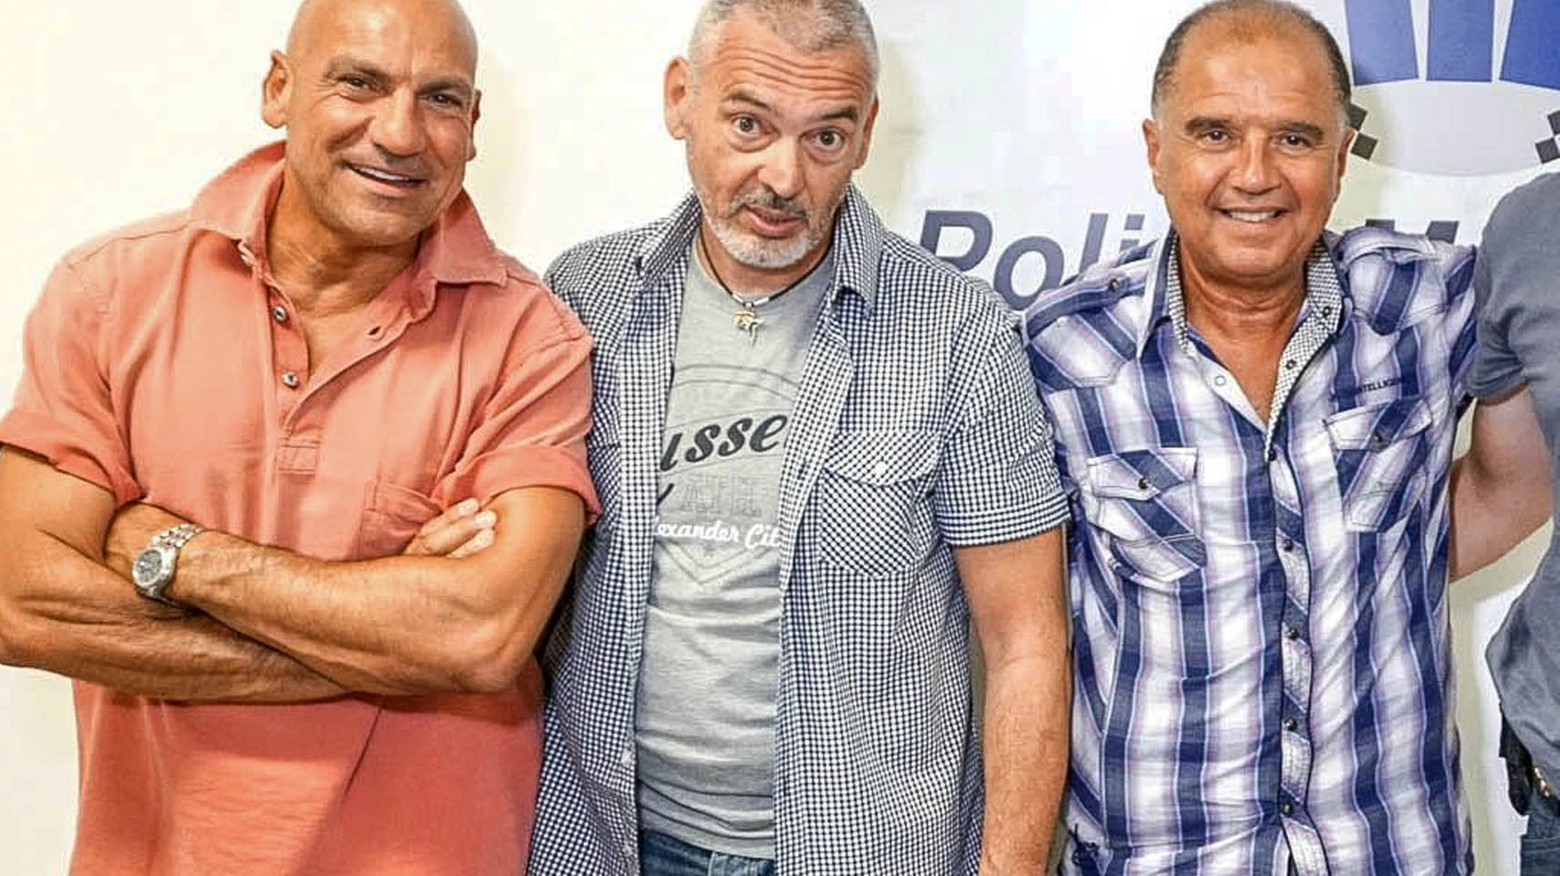 Tre dei quattro arrestati: da sinistra Guglielmo Parise, Gilberto Guidi e Massimo Vaccarin